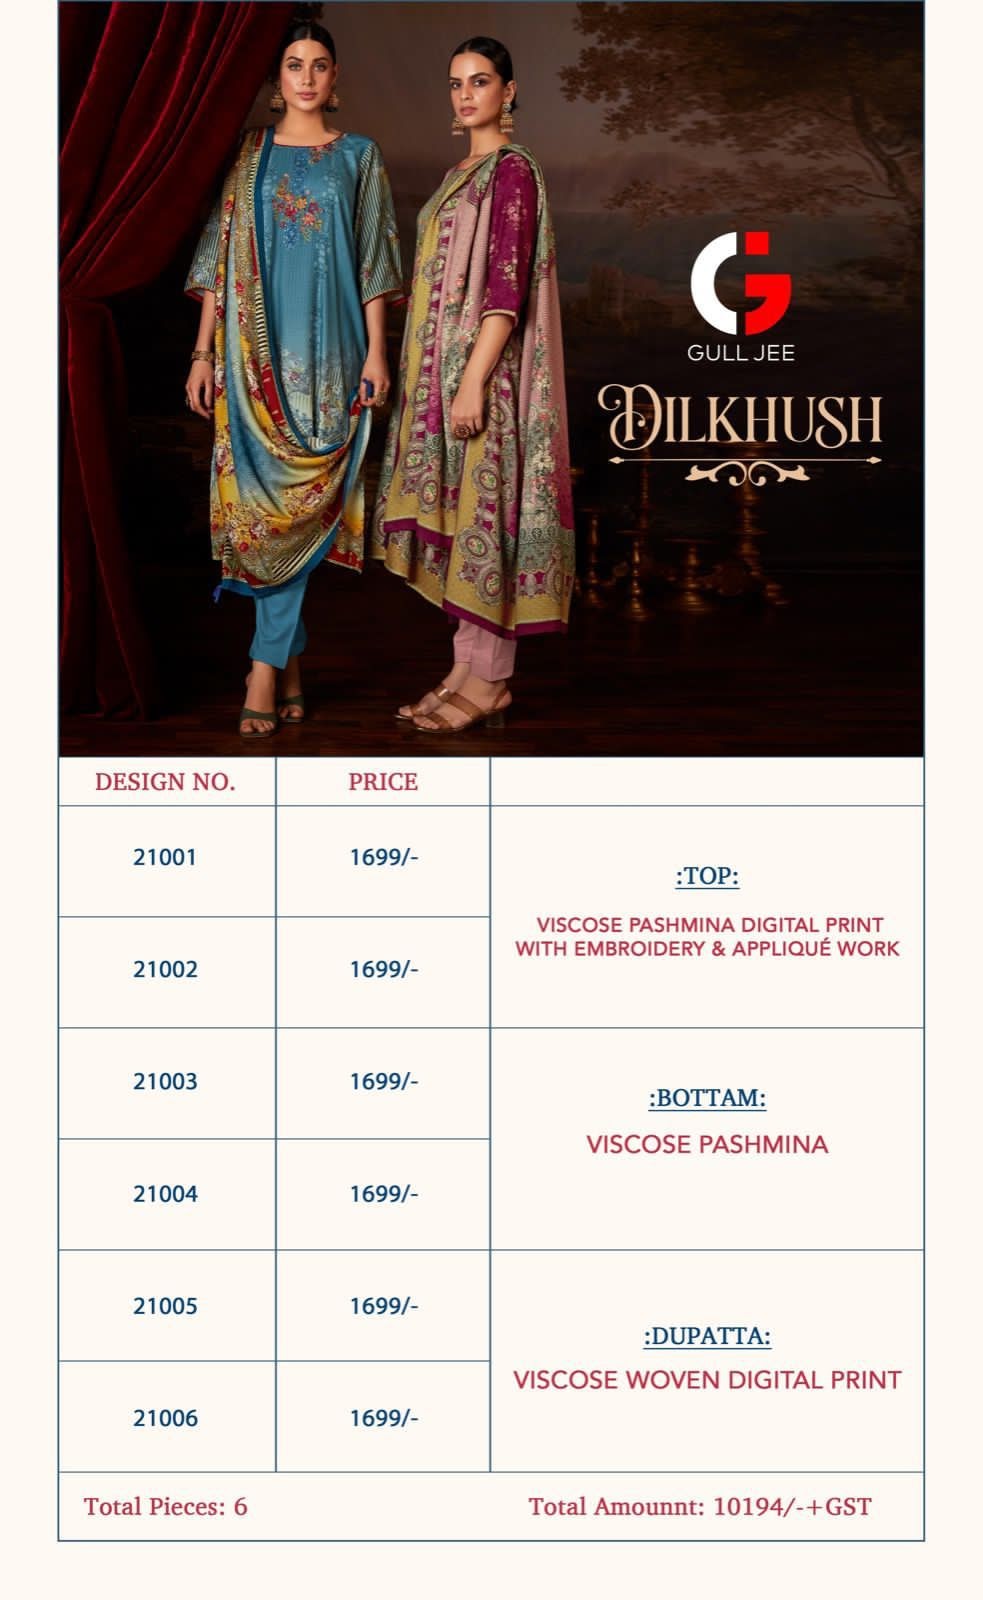 Dilkhush Gull Jee Pashmina Suits